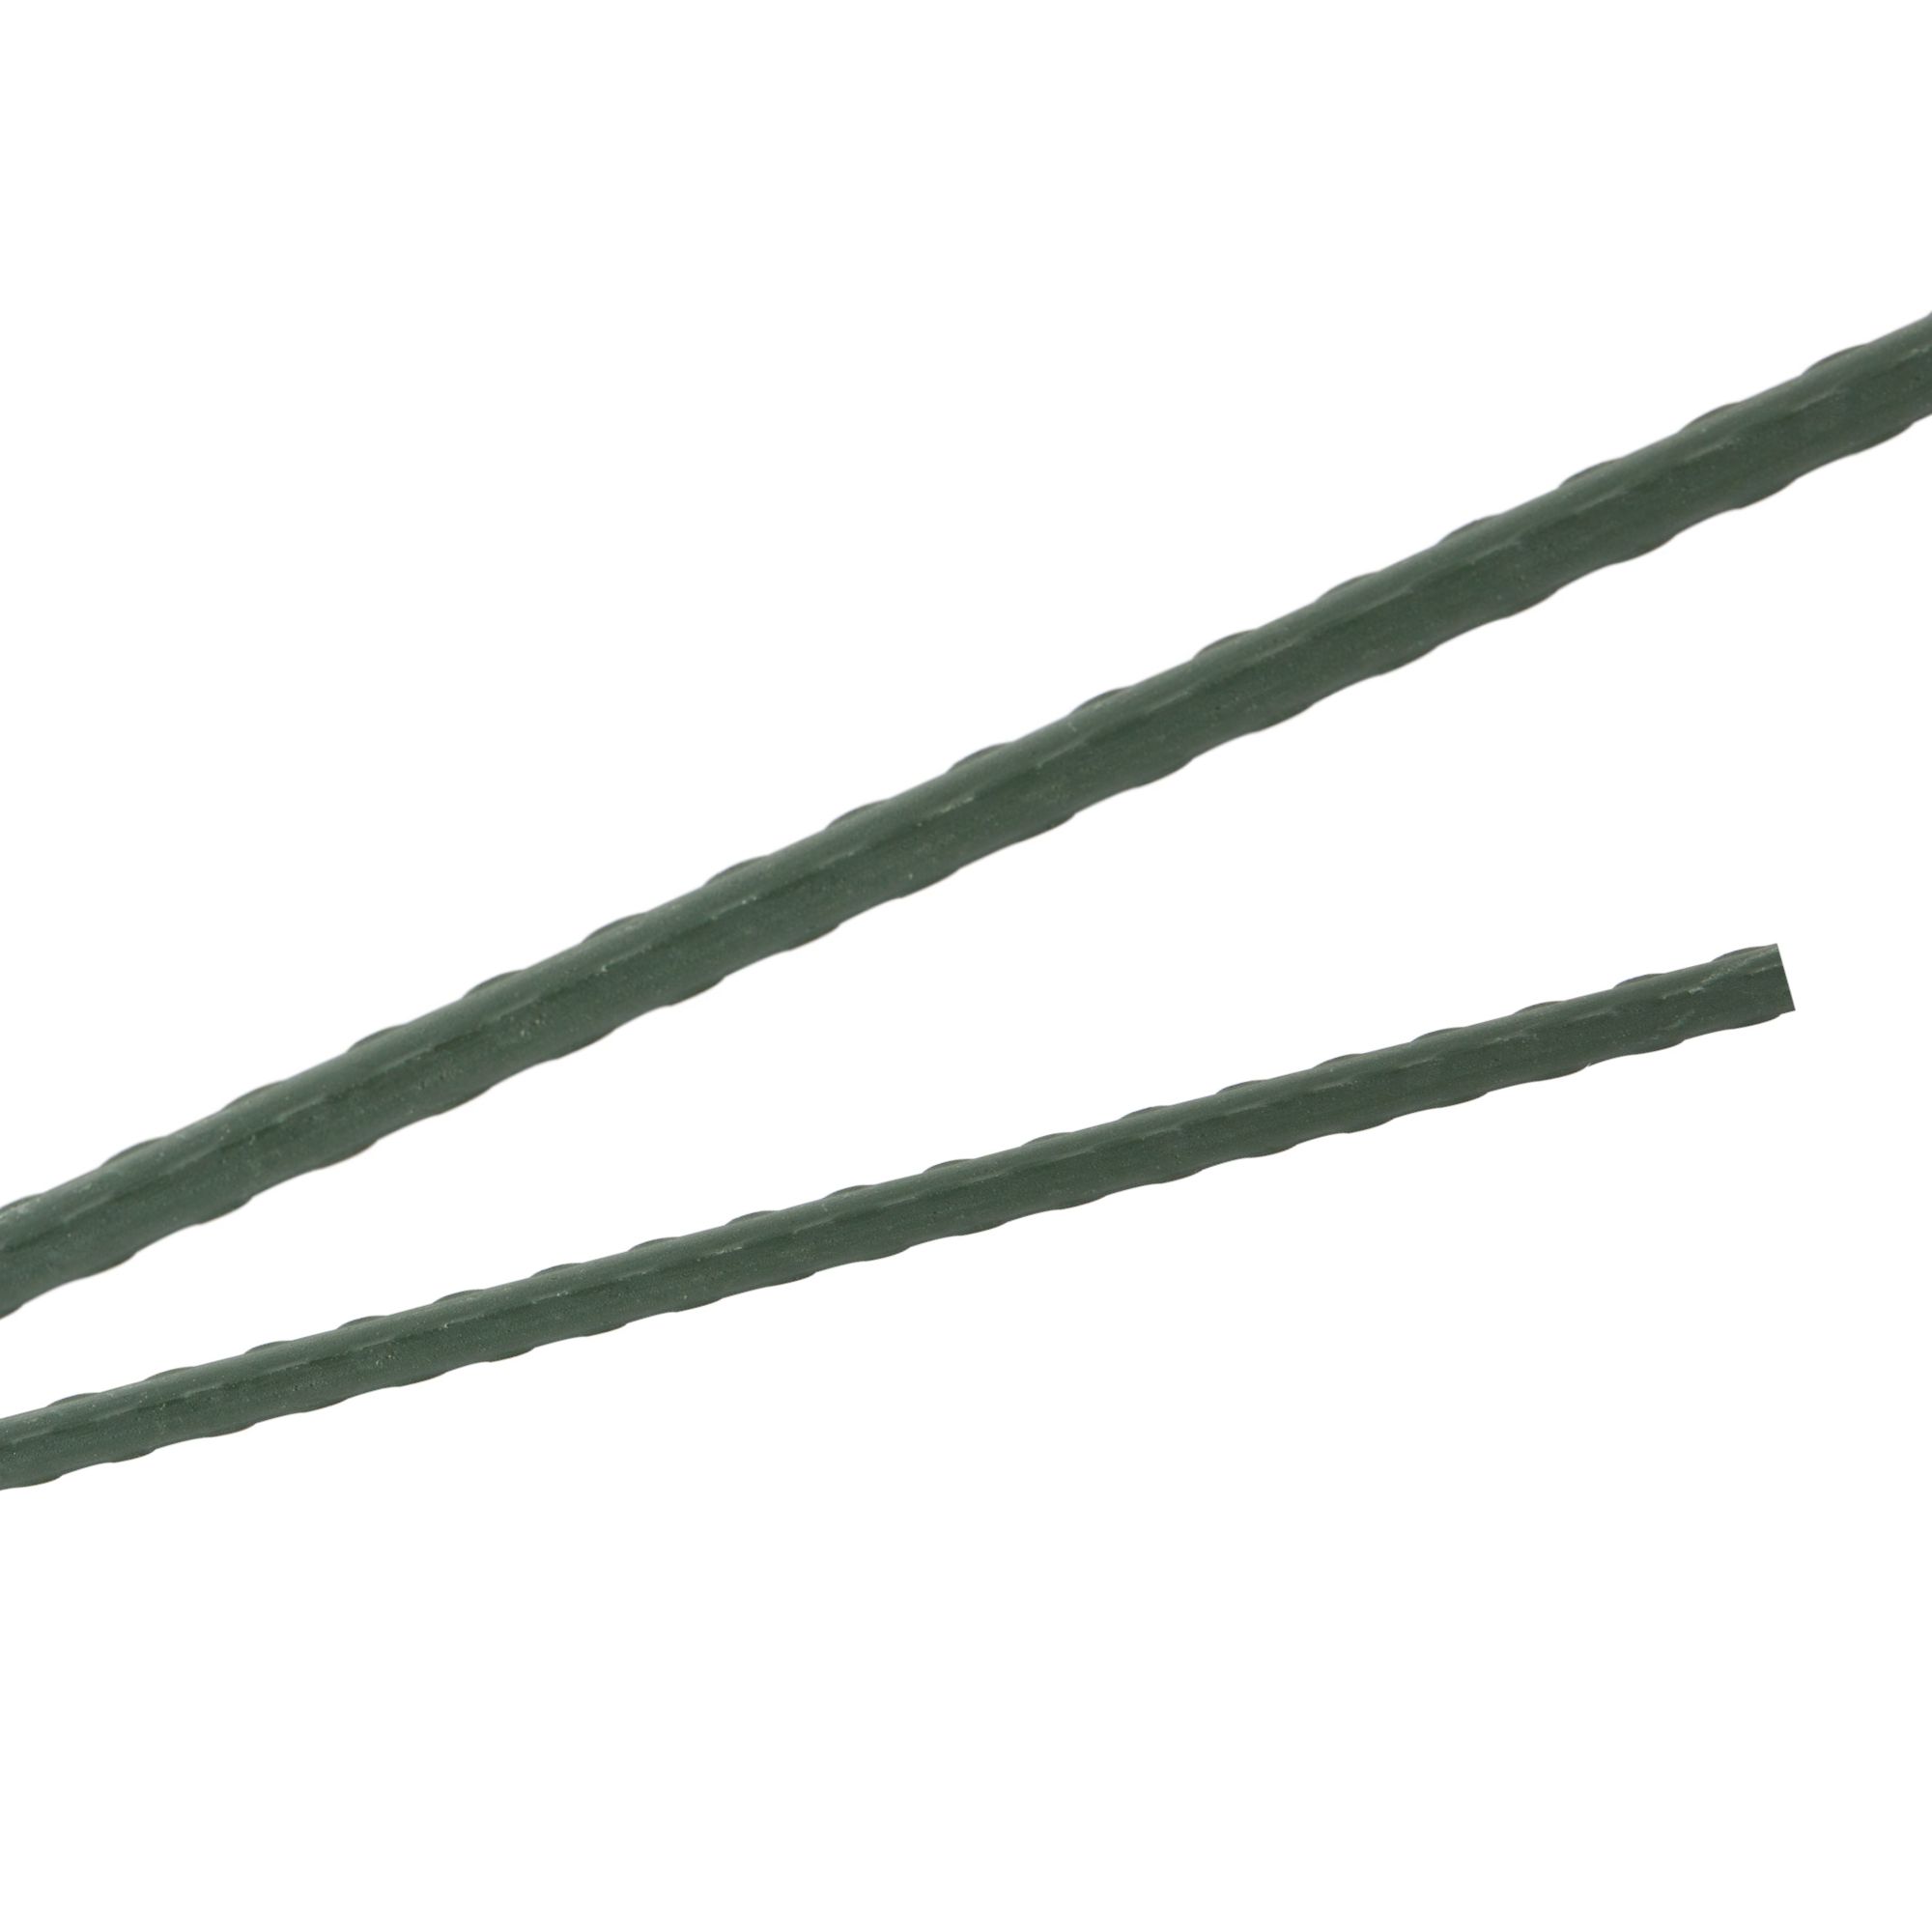 Tyč podpěrná, 20mm, 180cm, kov+PVC, zelená 0.280000 Kg GIGA Sklad20 211770 161